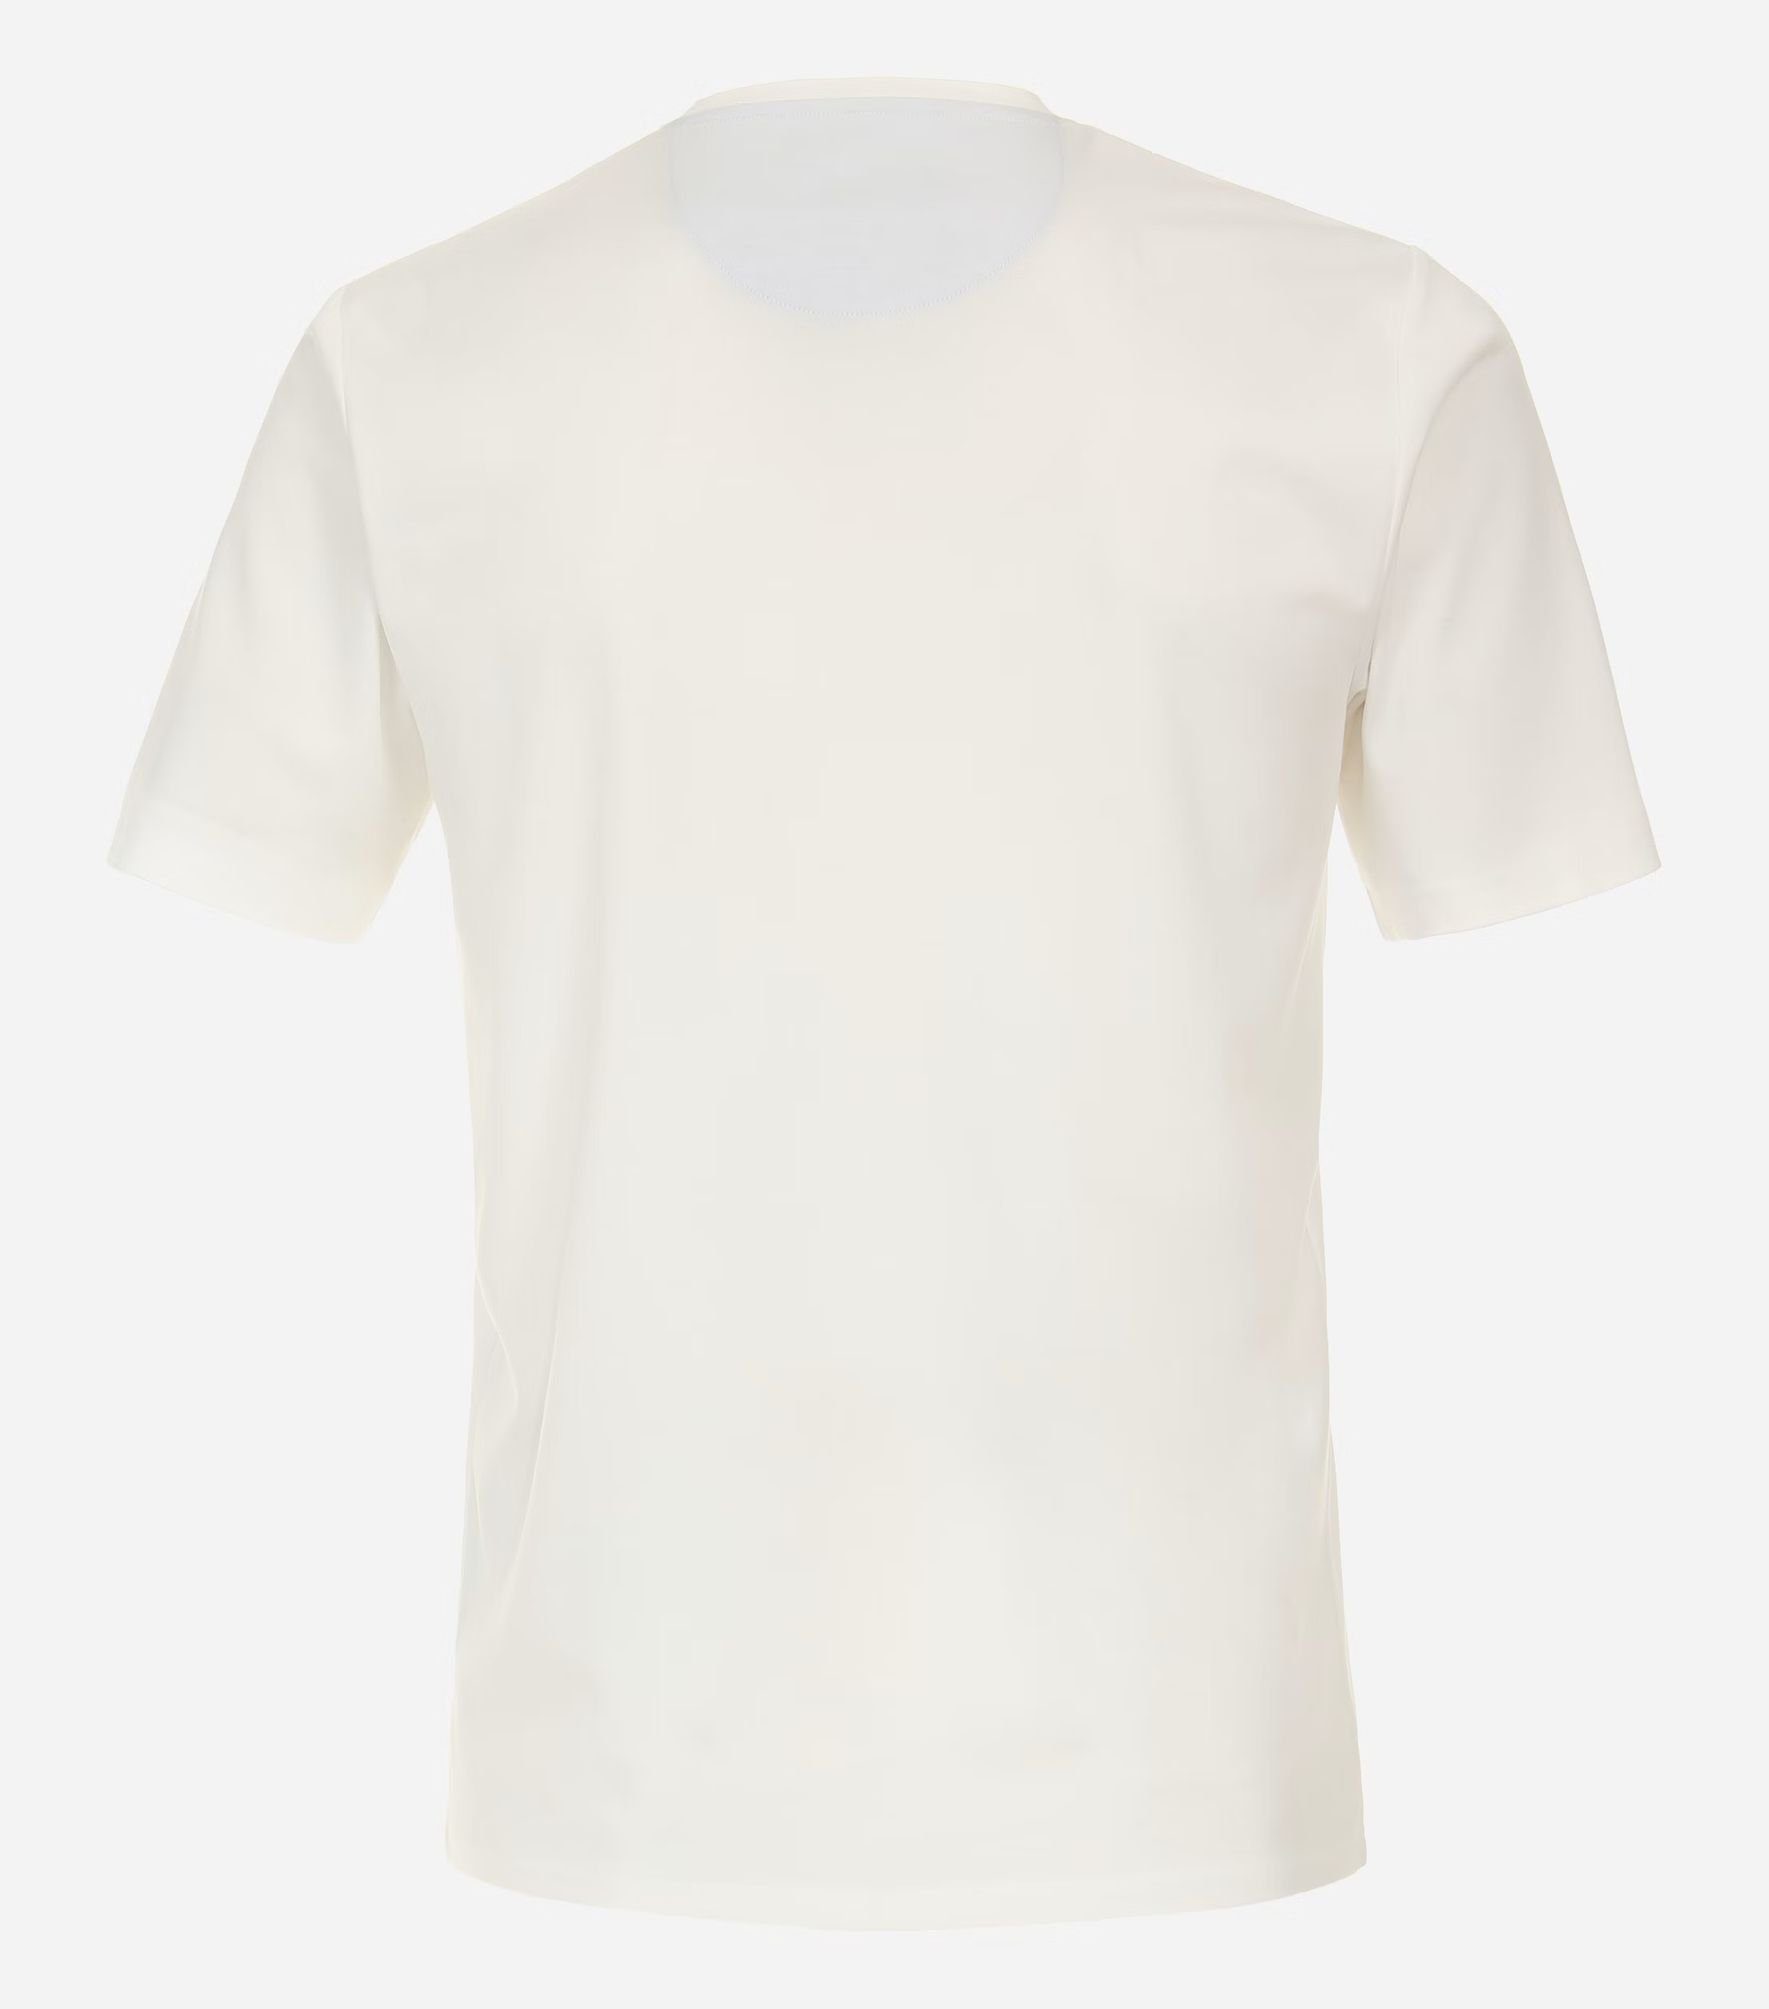 pflegeleicht Weiß(0) 231930650 T-Shirt Redmond